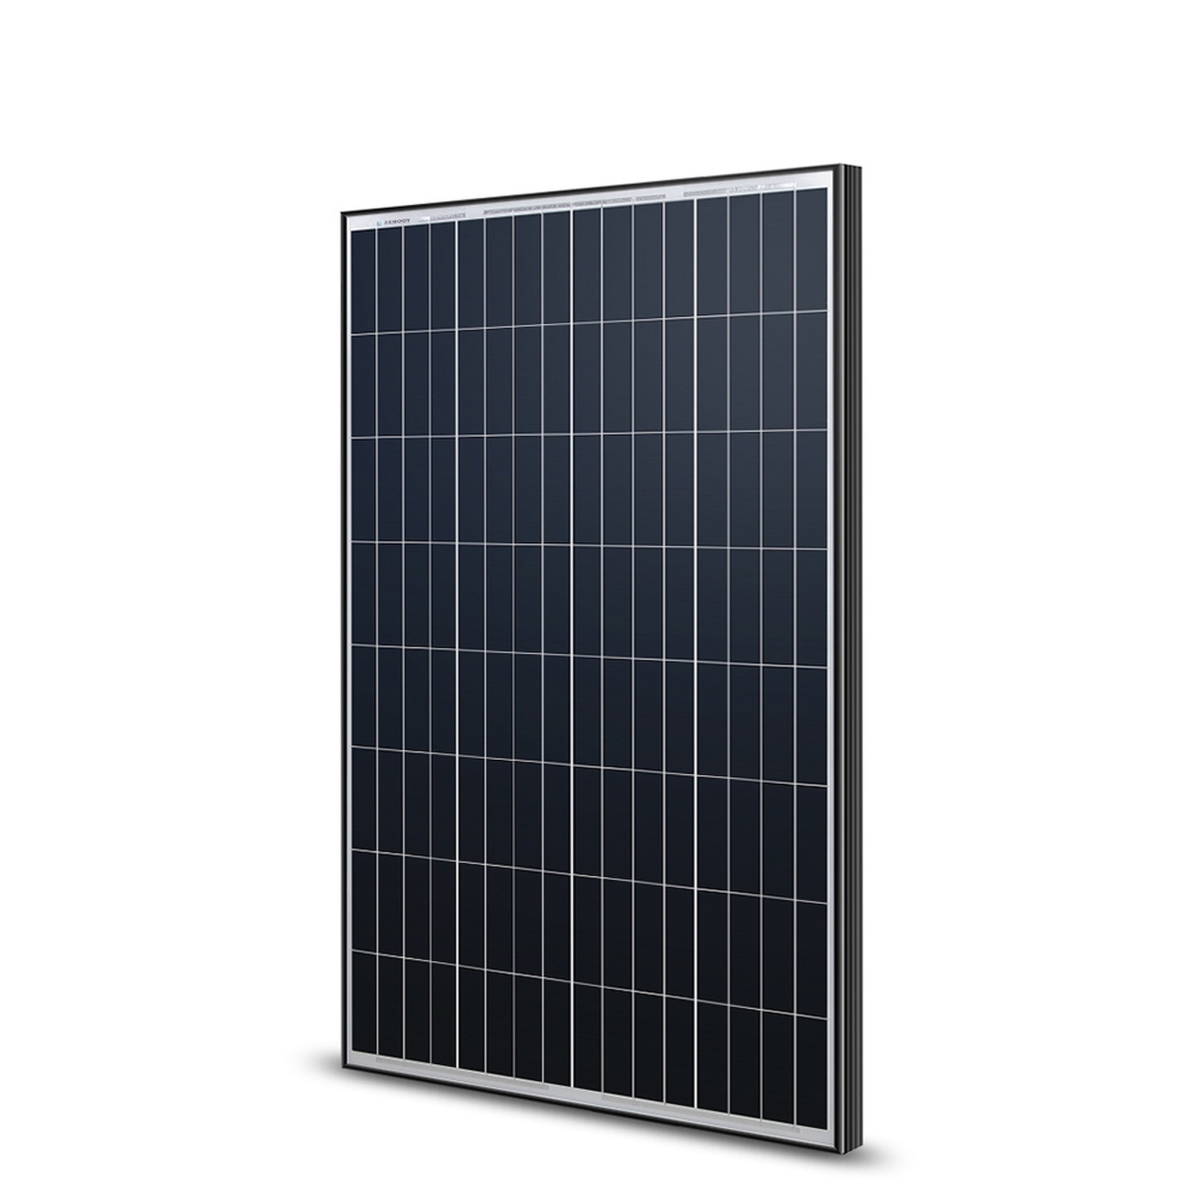 Rng-100d-r-bk 100 Watt 12v Monocrystalline Solar Panel With Black Frame